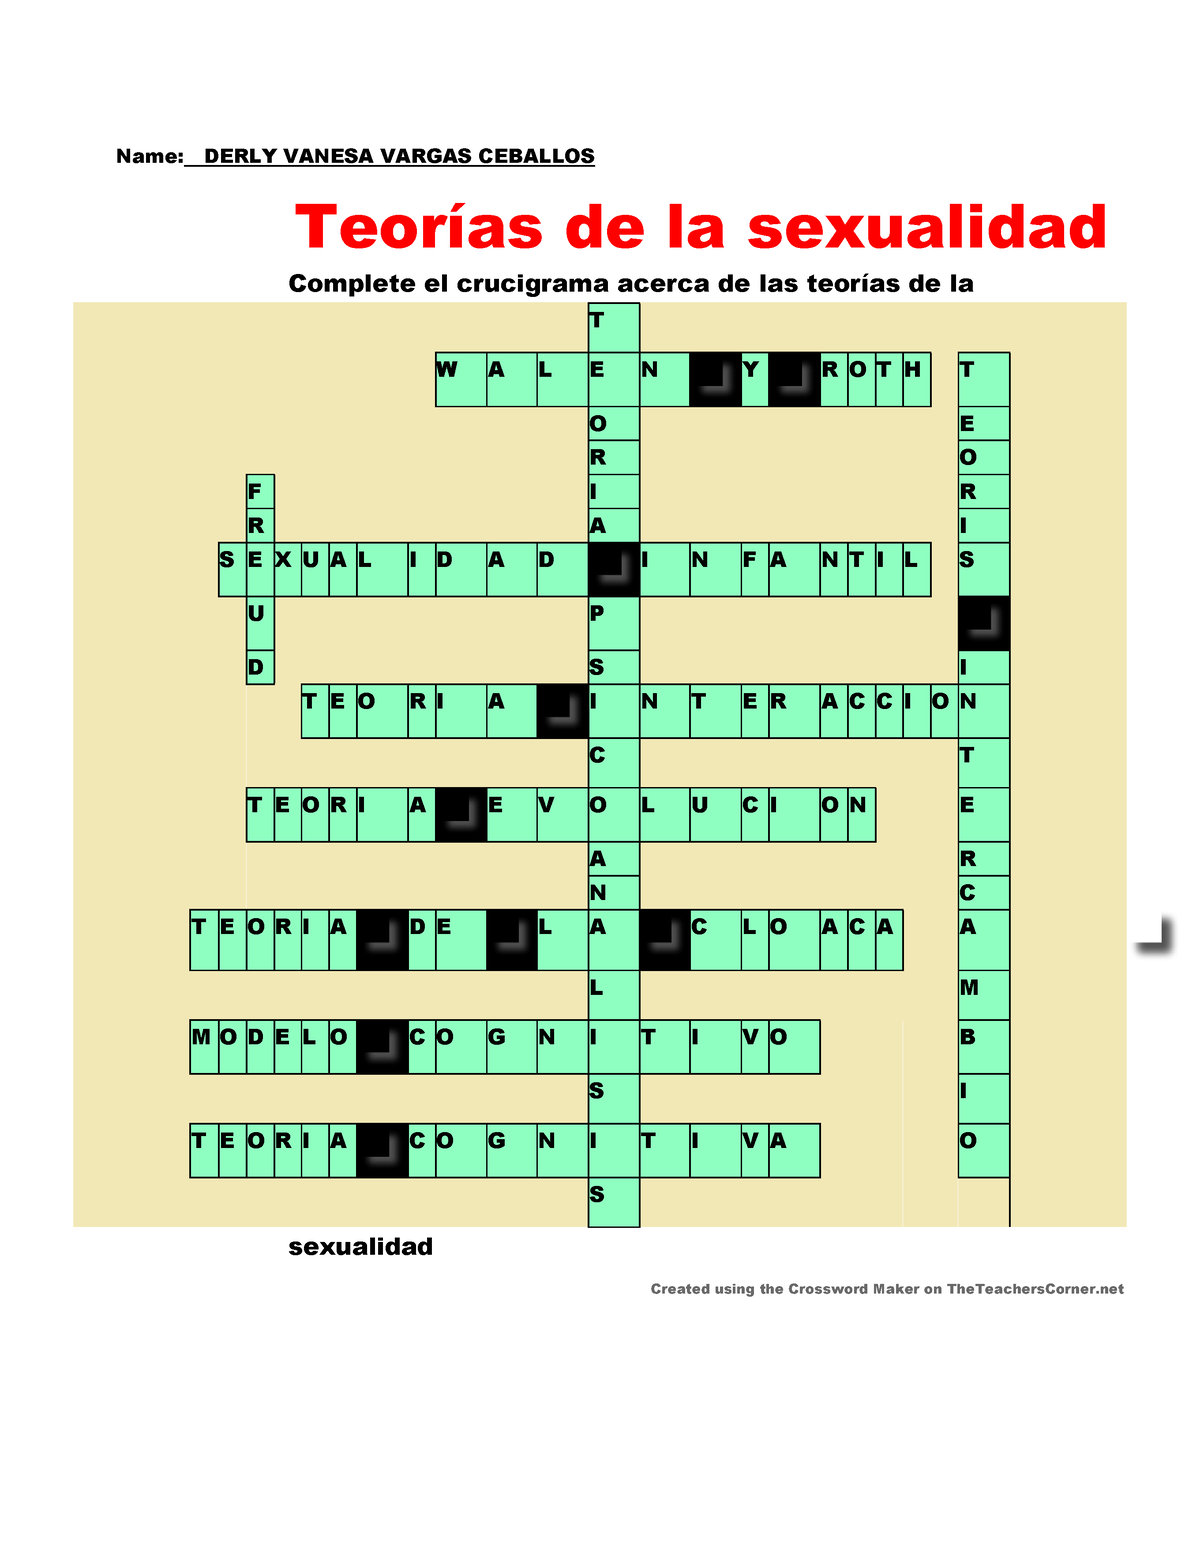 Crucigrama Teorias De La Sexualidad Name Derly Vanesa Vargas Ceballos Teorías De La 1264